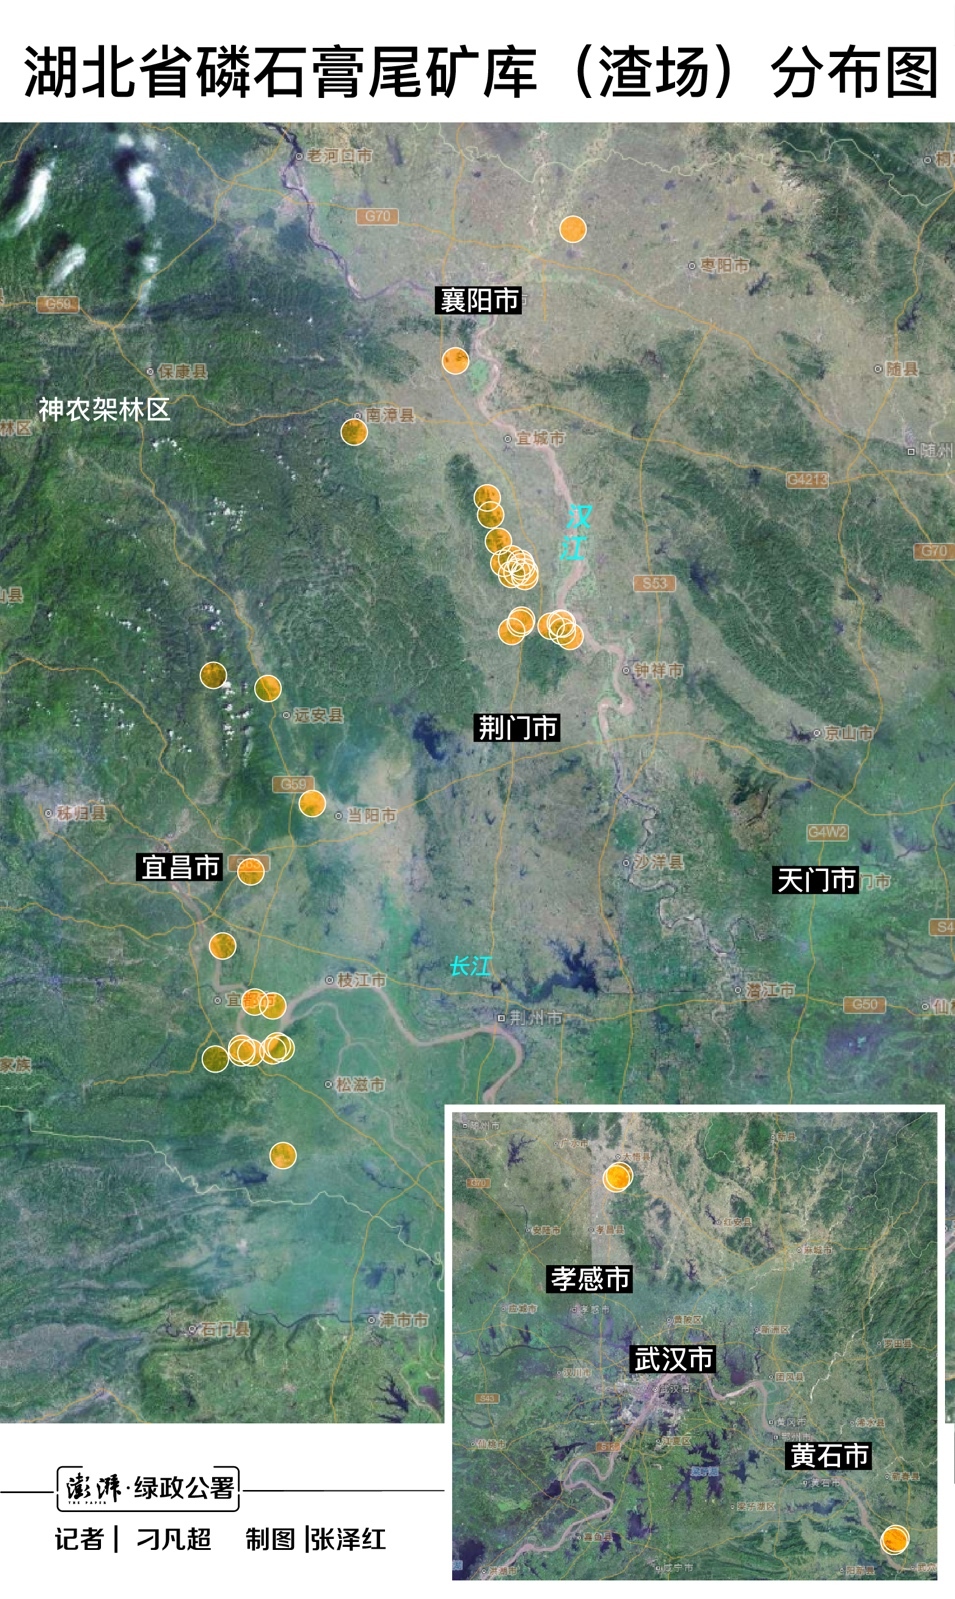 湖北省共有磷石膏库（含在用、闭库和停用）37座，总占地15.8平方公里，相当于1800个标准足球场。其中有18座距长江和汉江干流不足5公里，最近1座距离长江仅50米。 资料来源：湖北省应急管理厅